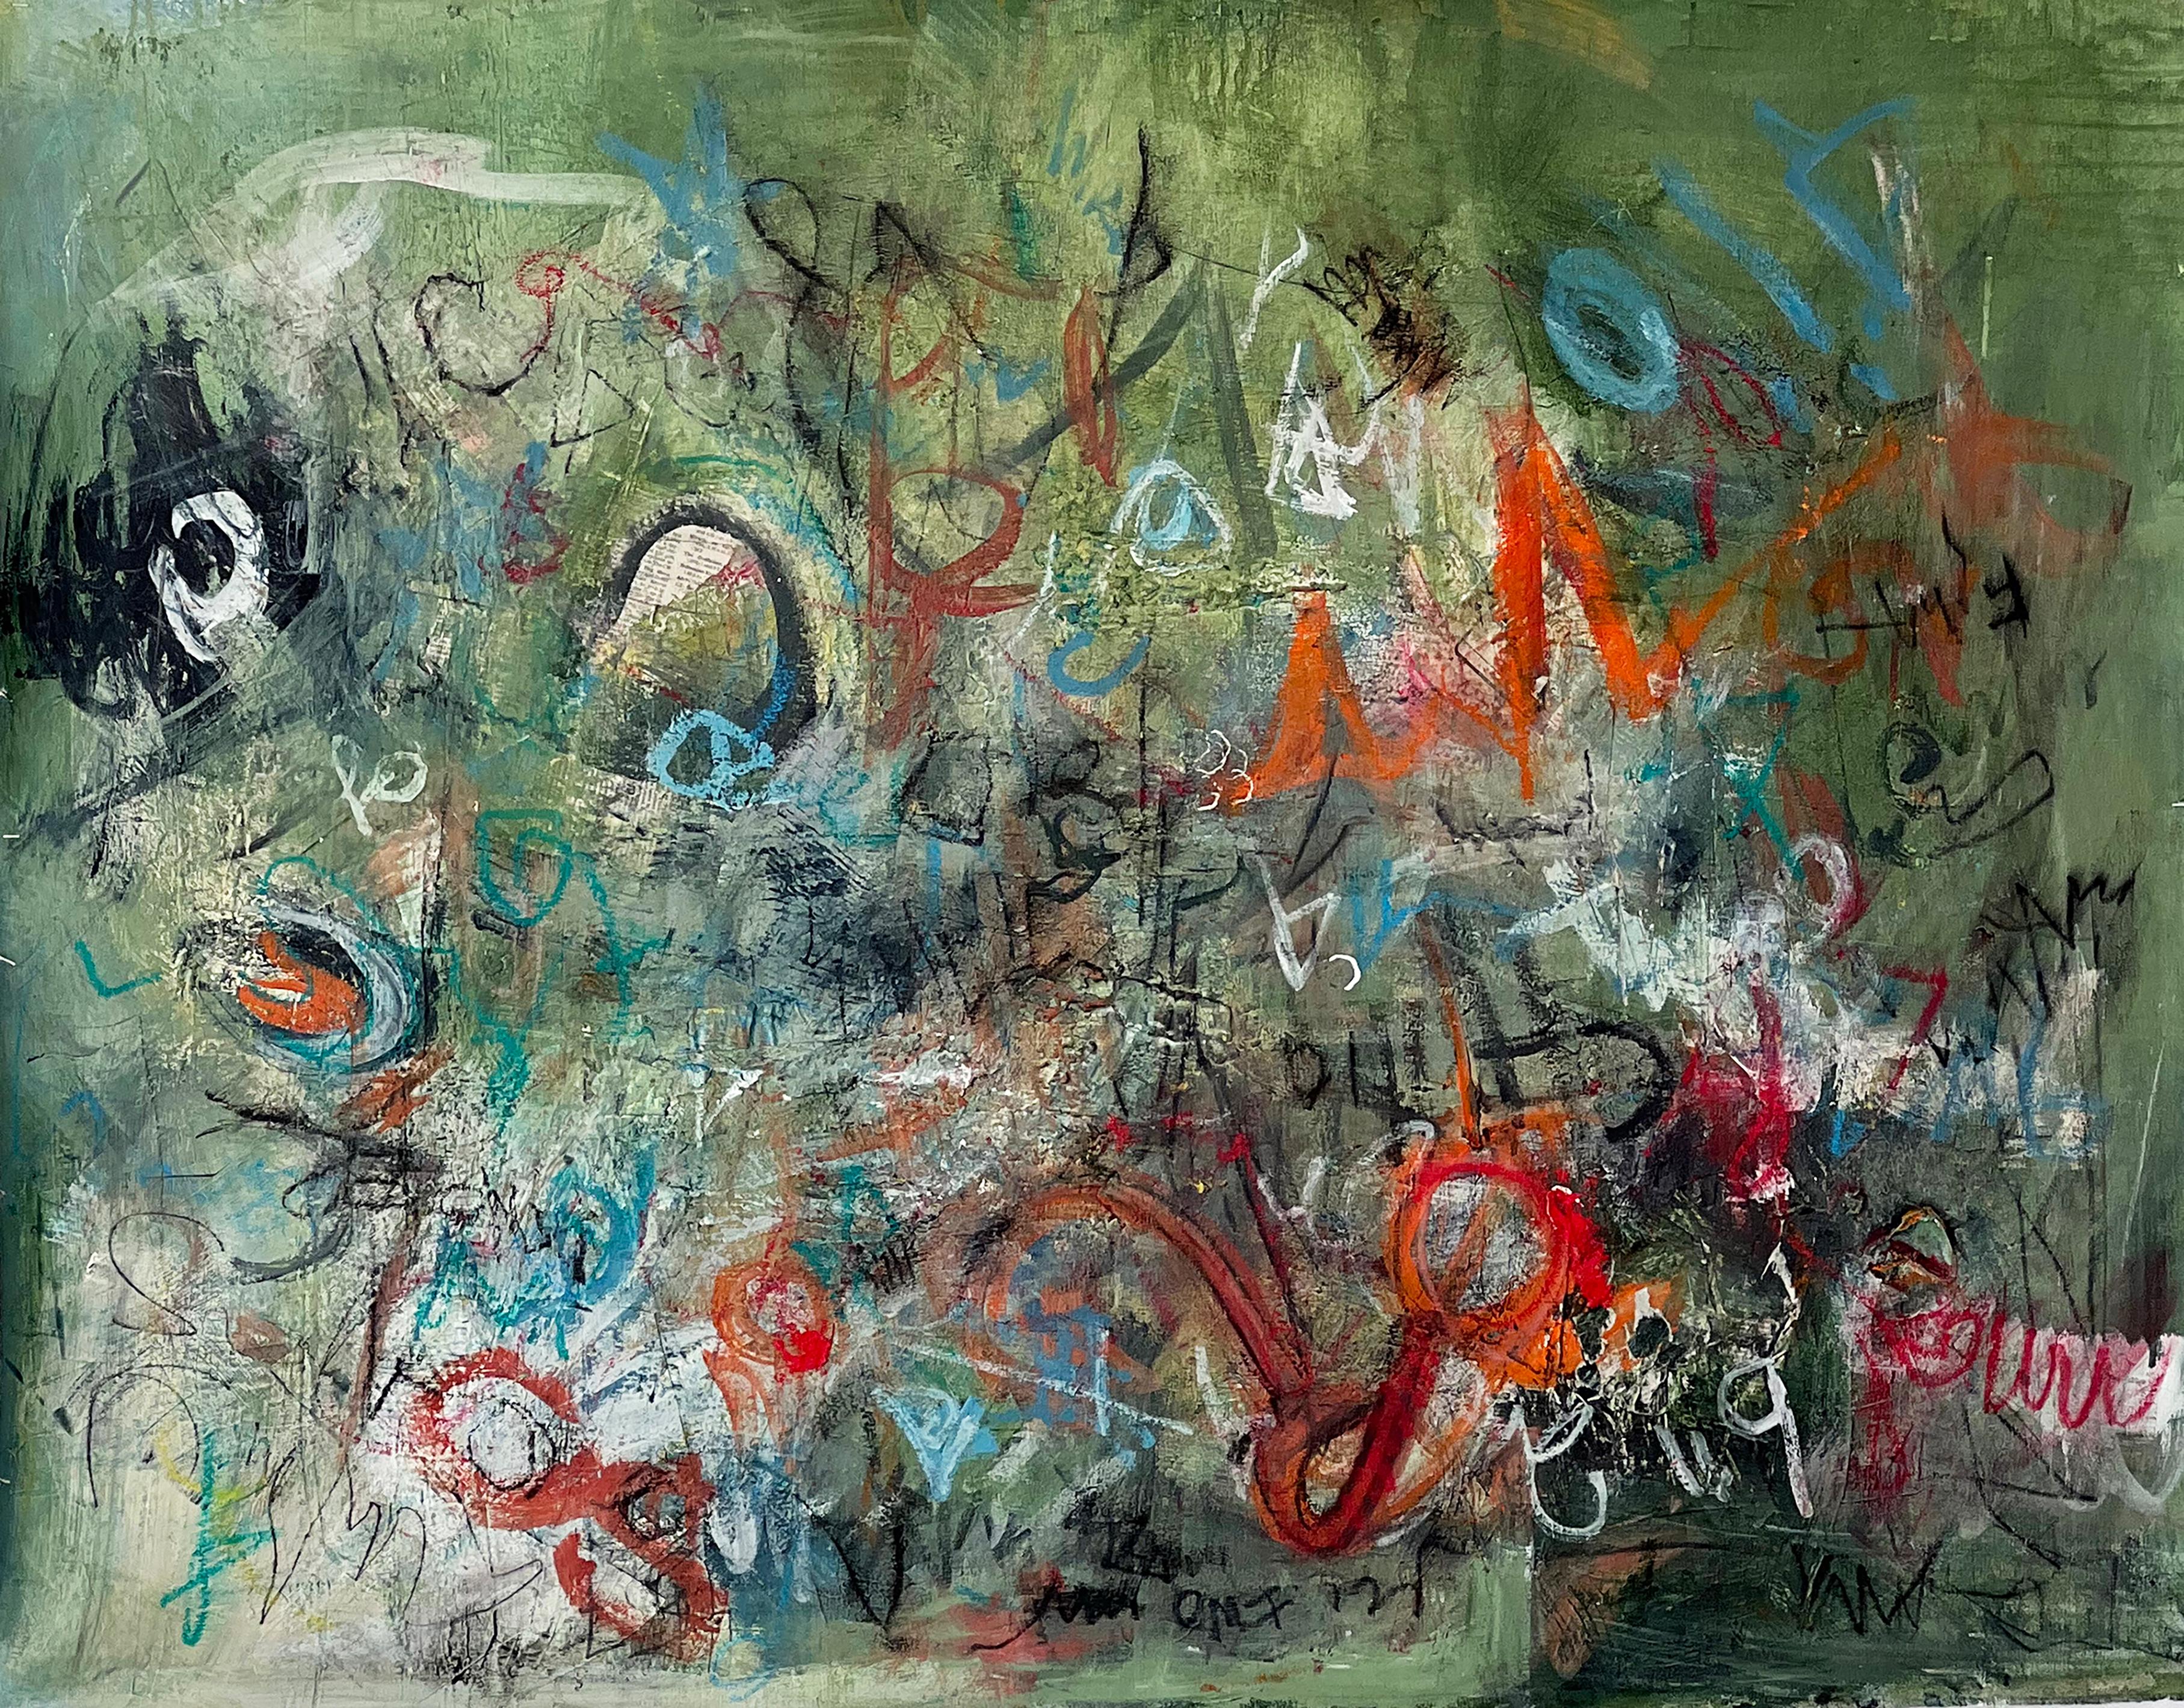 Série Echo : Graffiti - acrylique sur toile - Painting de Stephanie Visser 